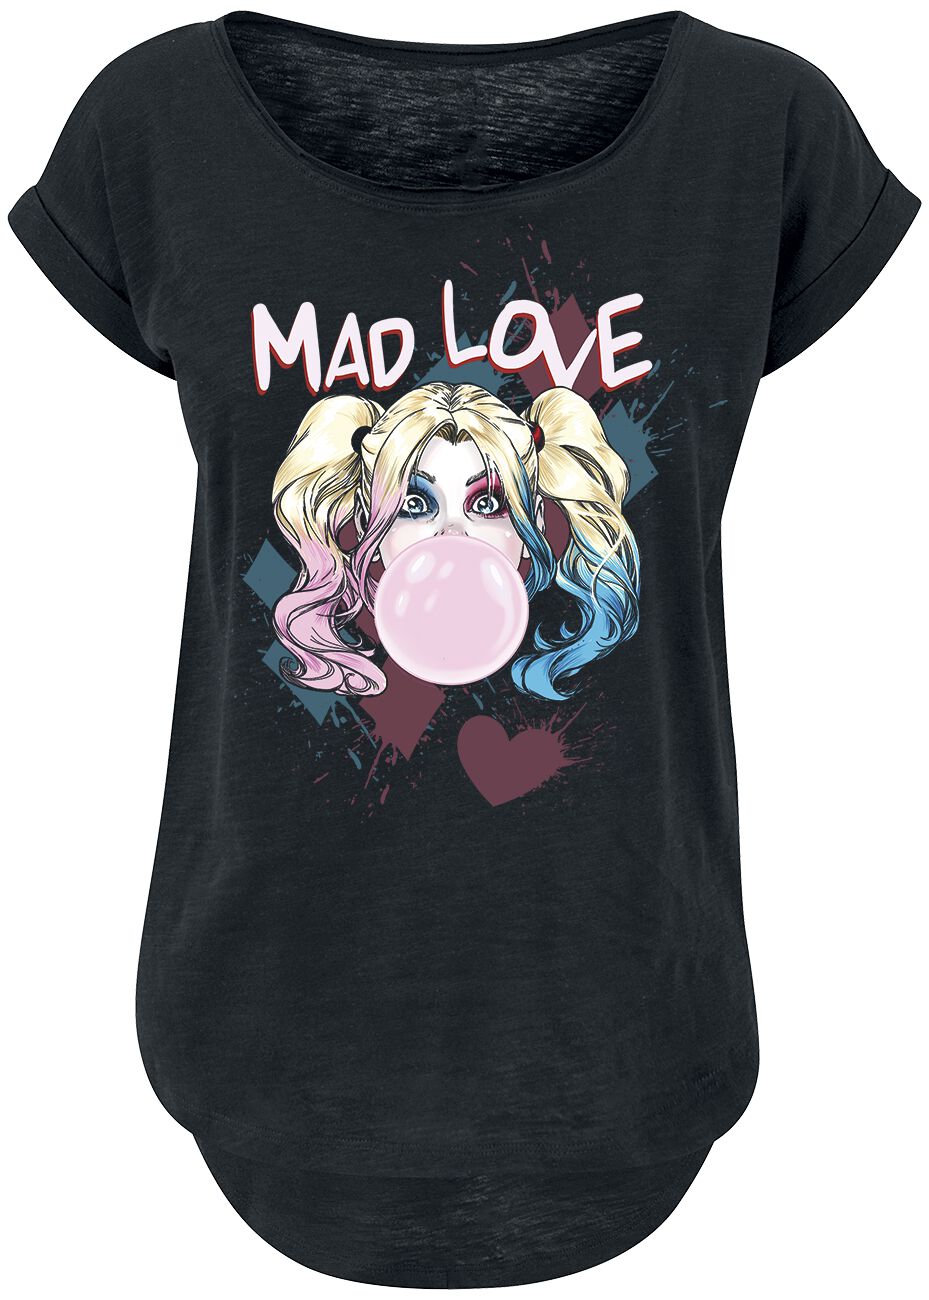 Harley Quinn - DC Comics T-Shirt - Mad Love - XS bis 3XL - für Damen - Größe L - schwarz  - EMP exklusives Merchandise!